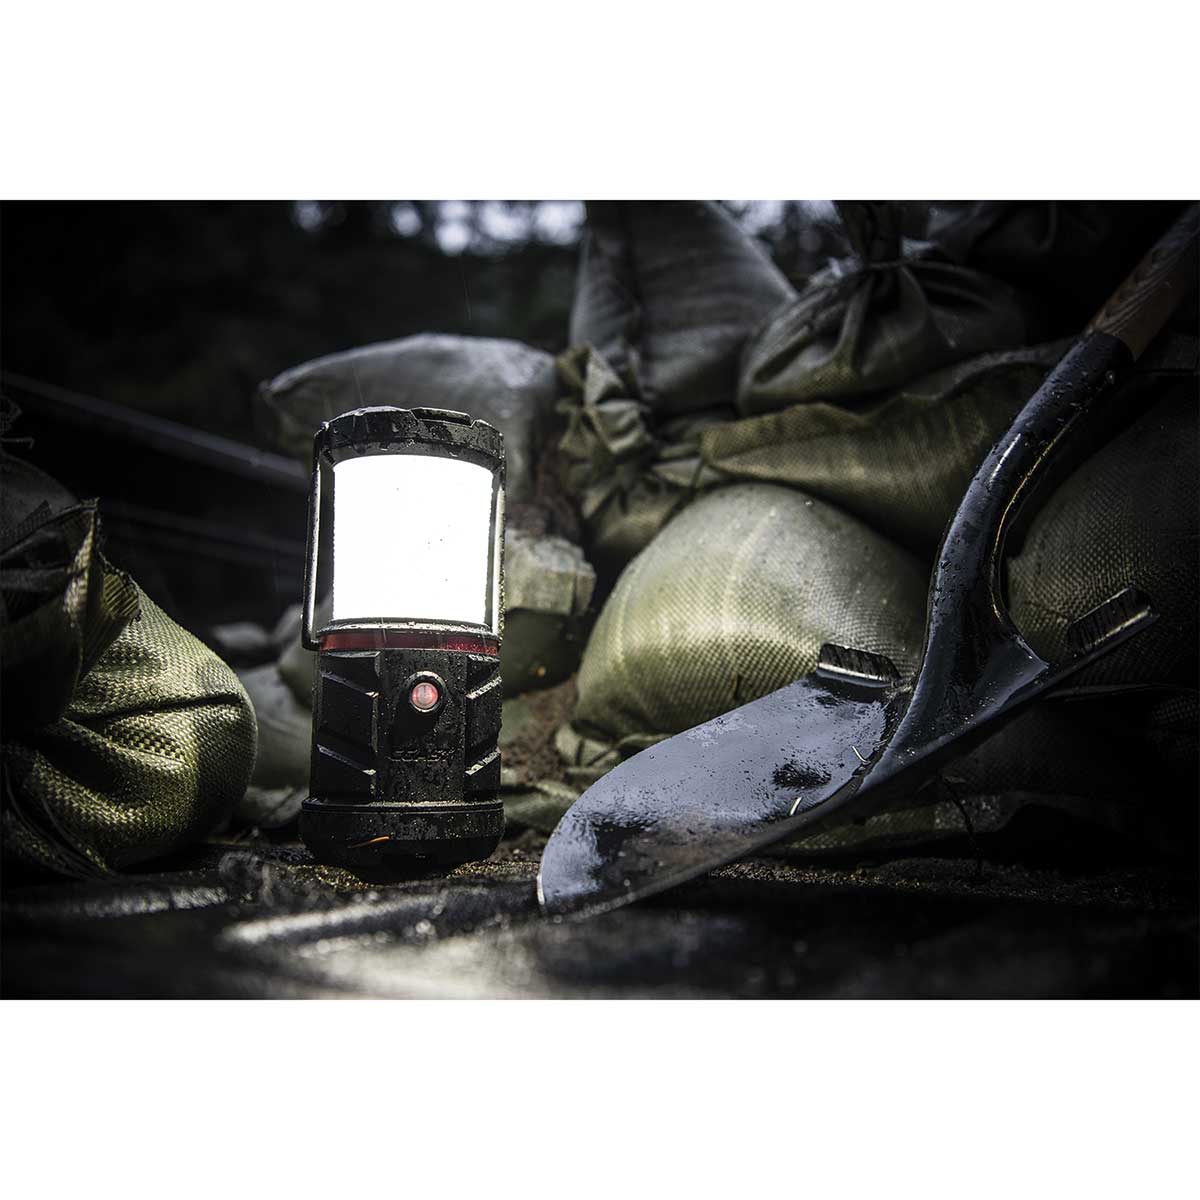 Coast LED Emergency Area Lantern - EAL22